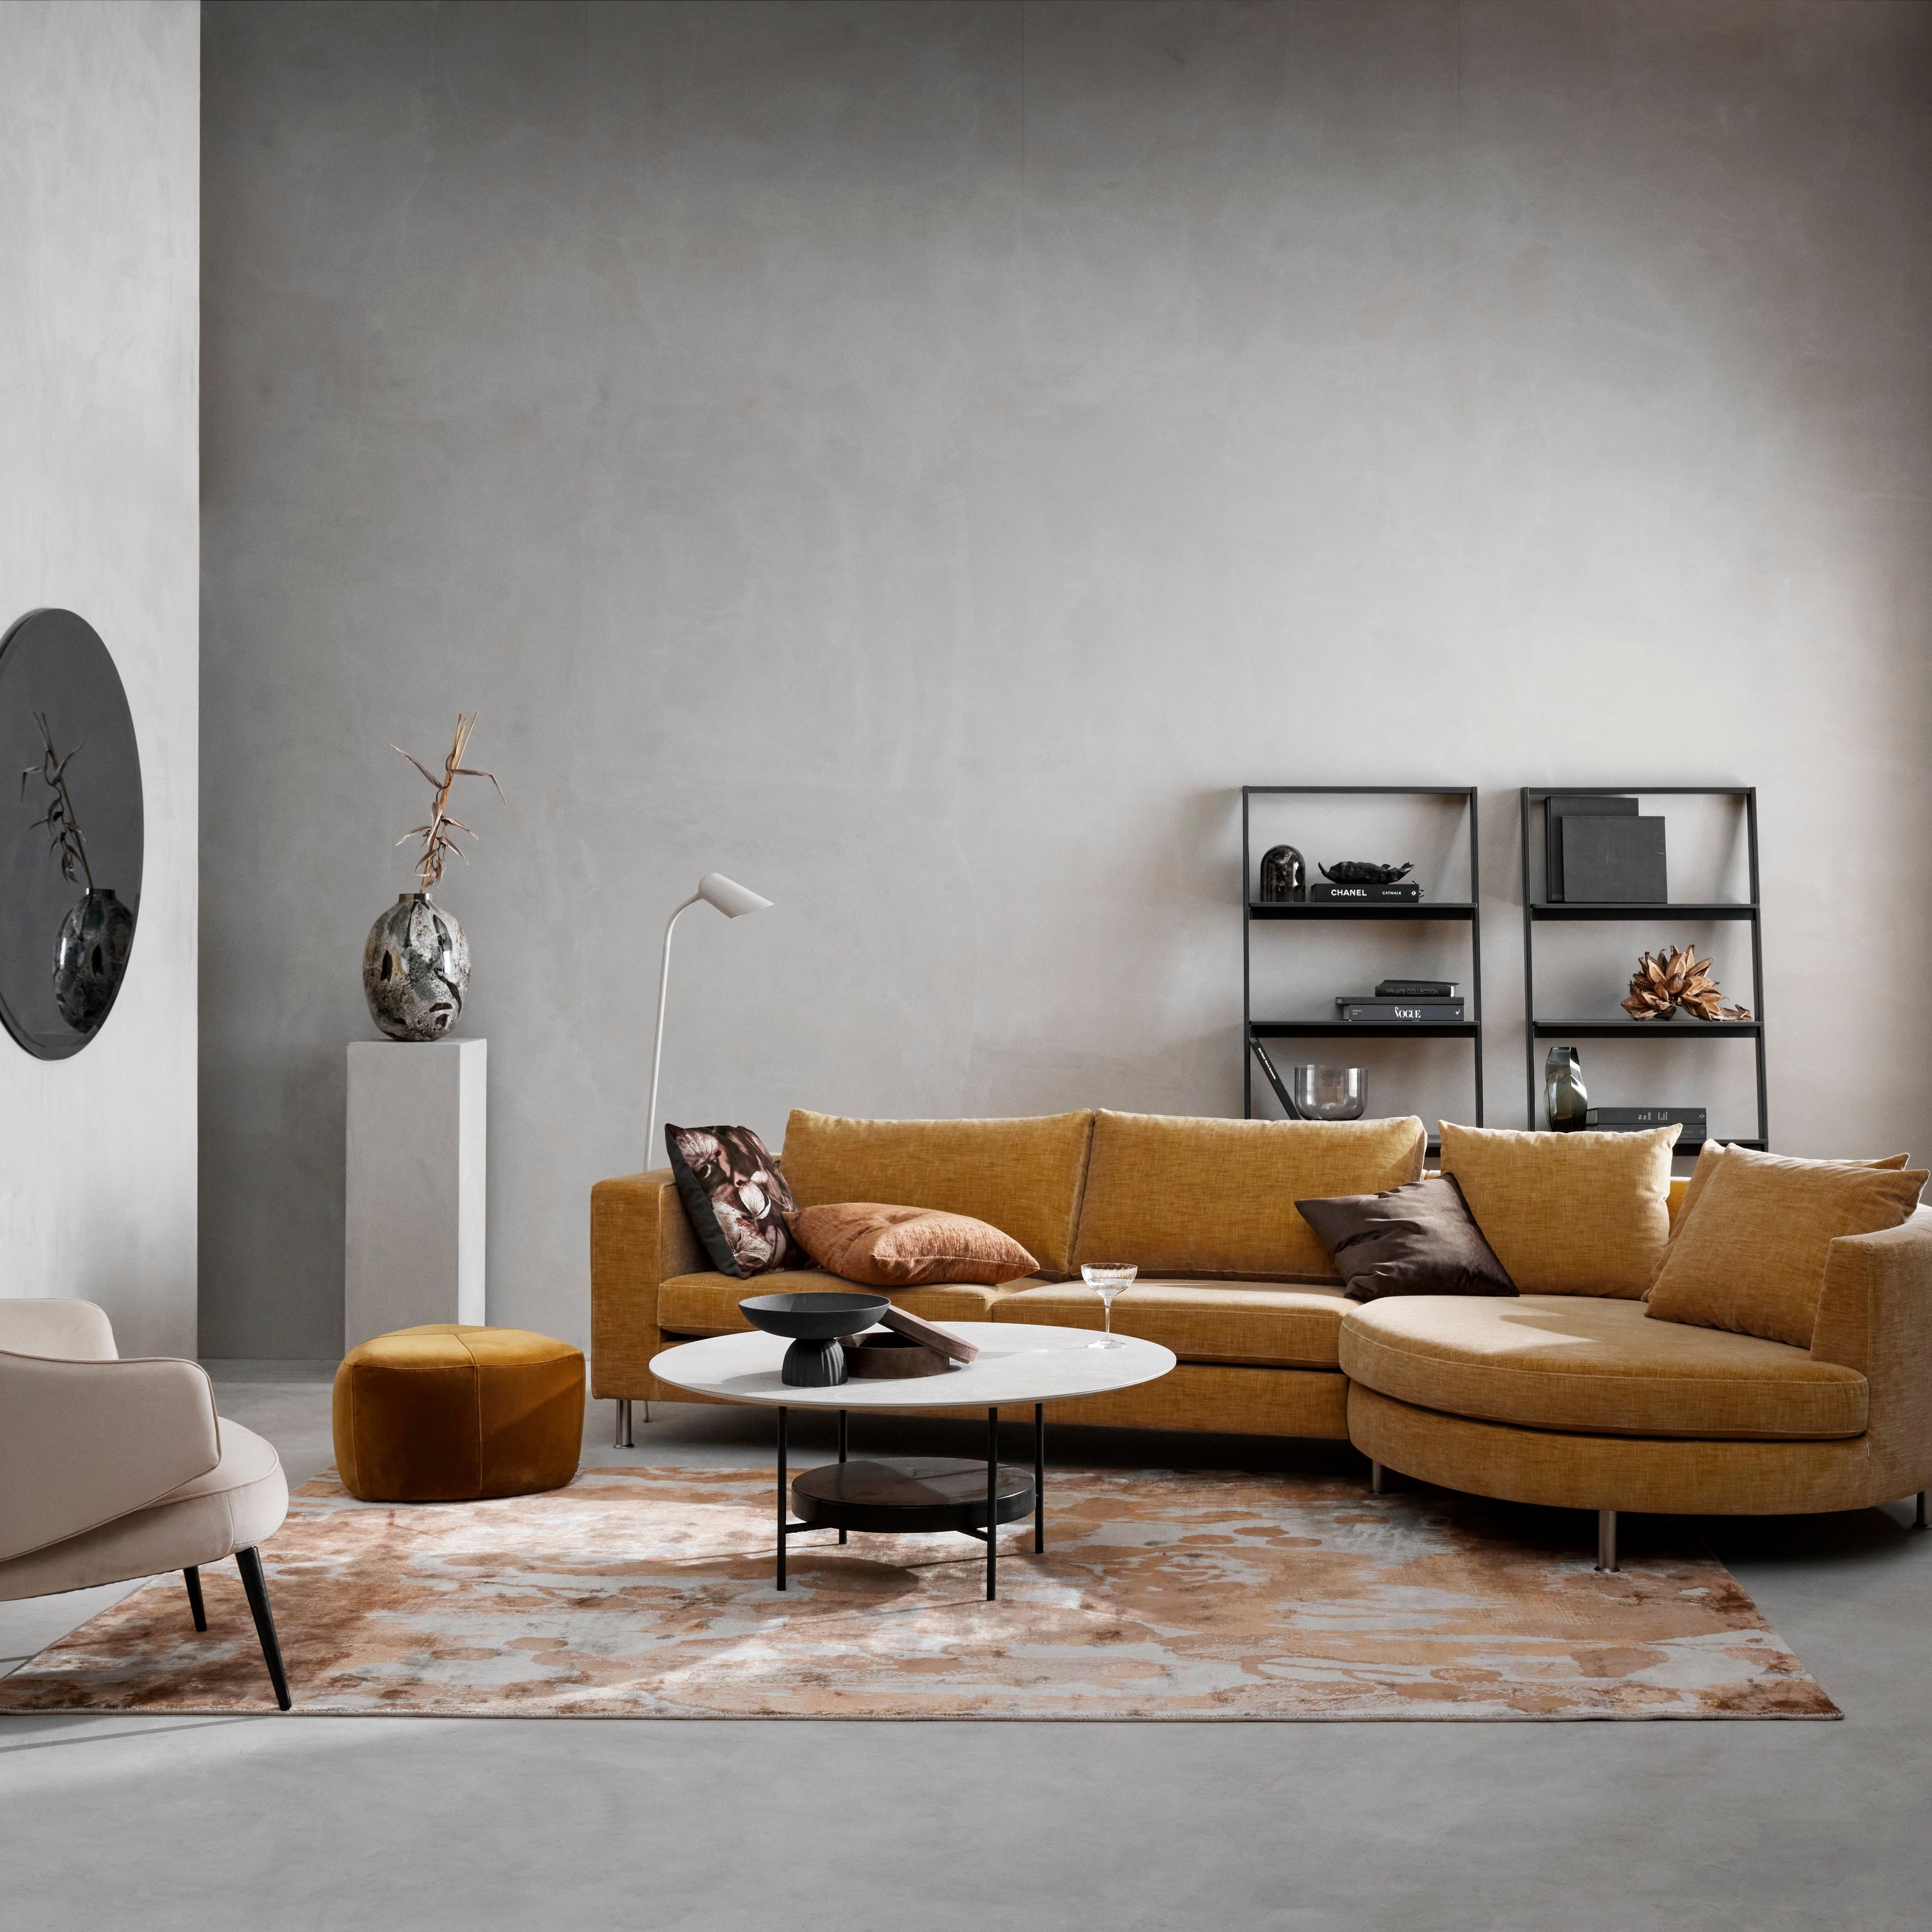 Moderni olohuone, jossa on sinapinvärinen modulaarinen sohva, beige tuoli, kuviollinen matto ja minimalistinen sisustustyyli.